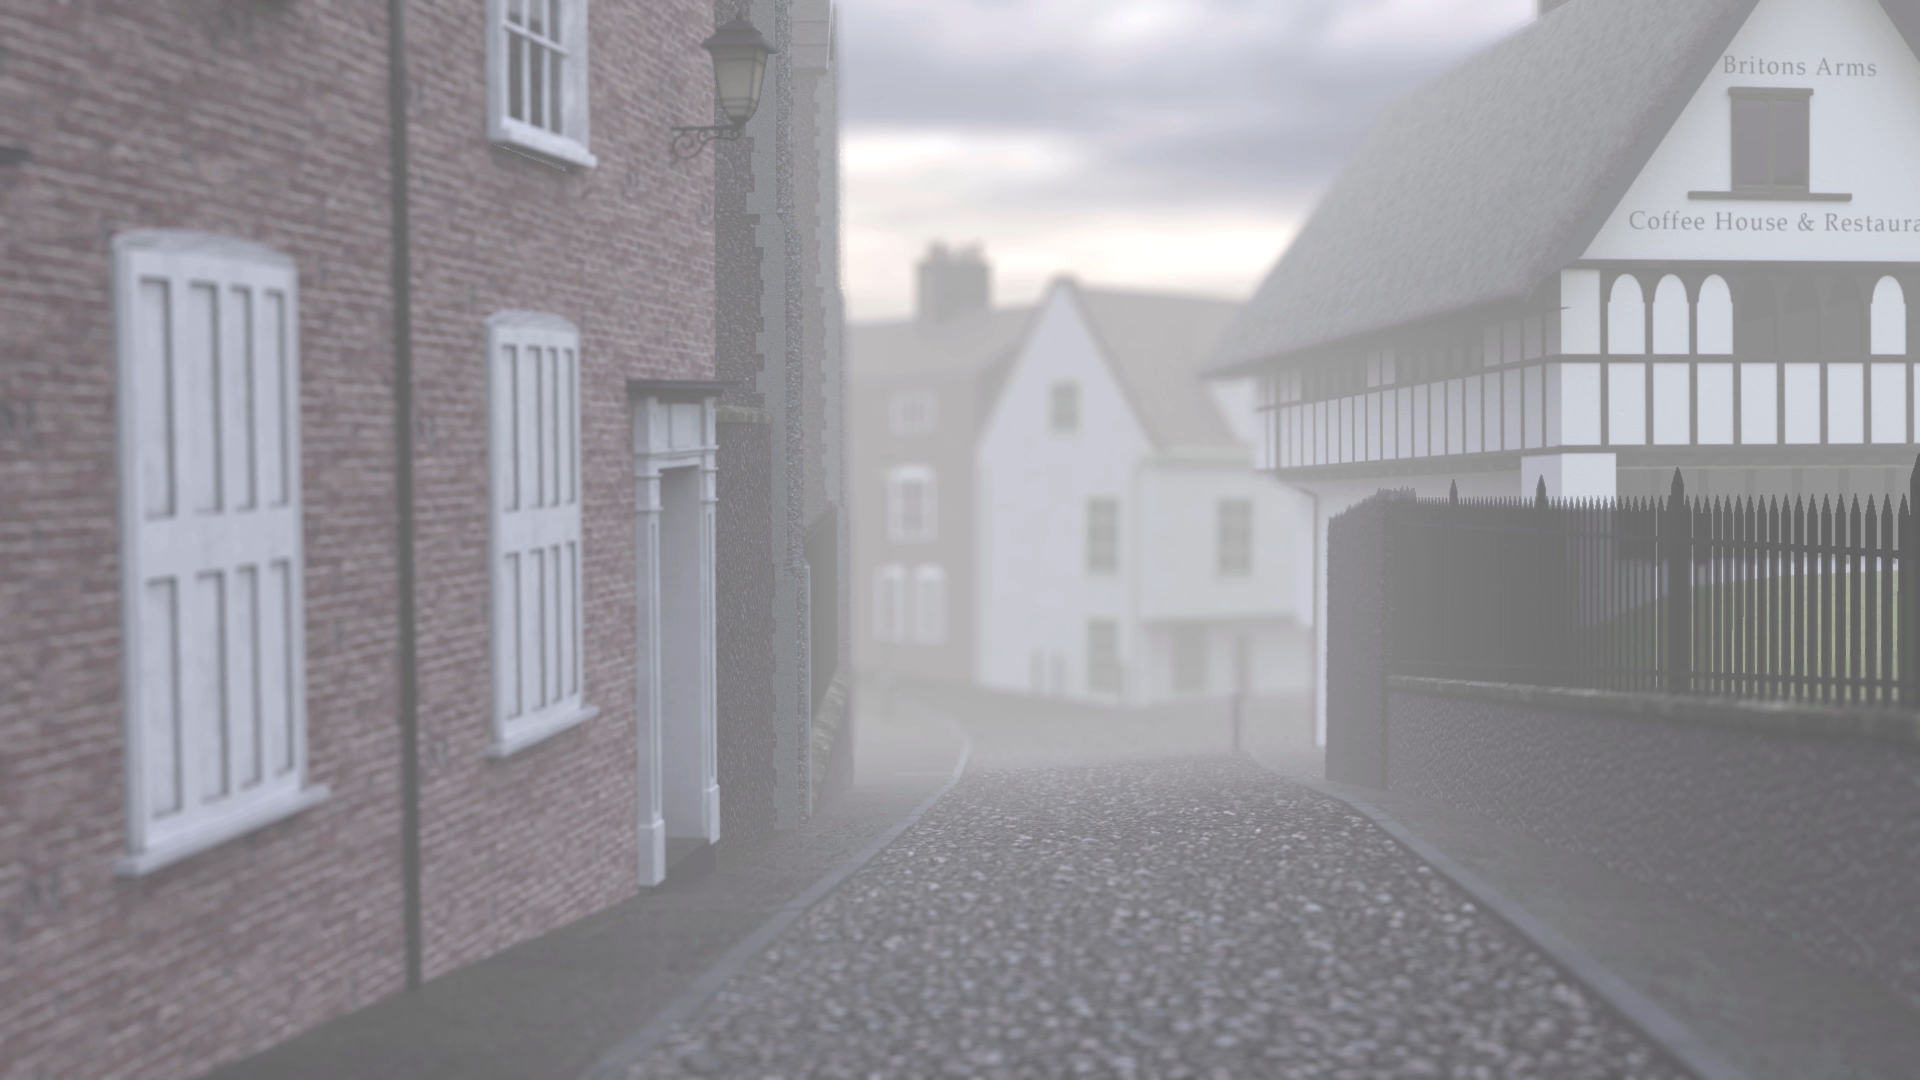 VFX work by Keldon Israel showcasing a misty cobbled street found in Norwich.